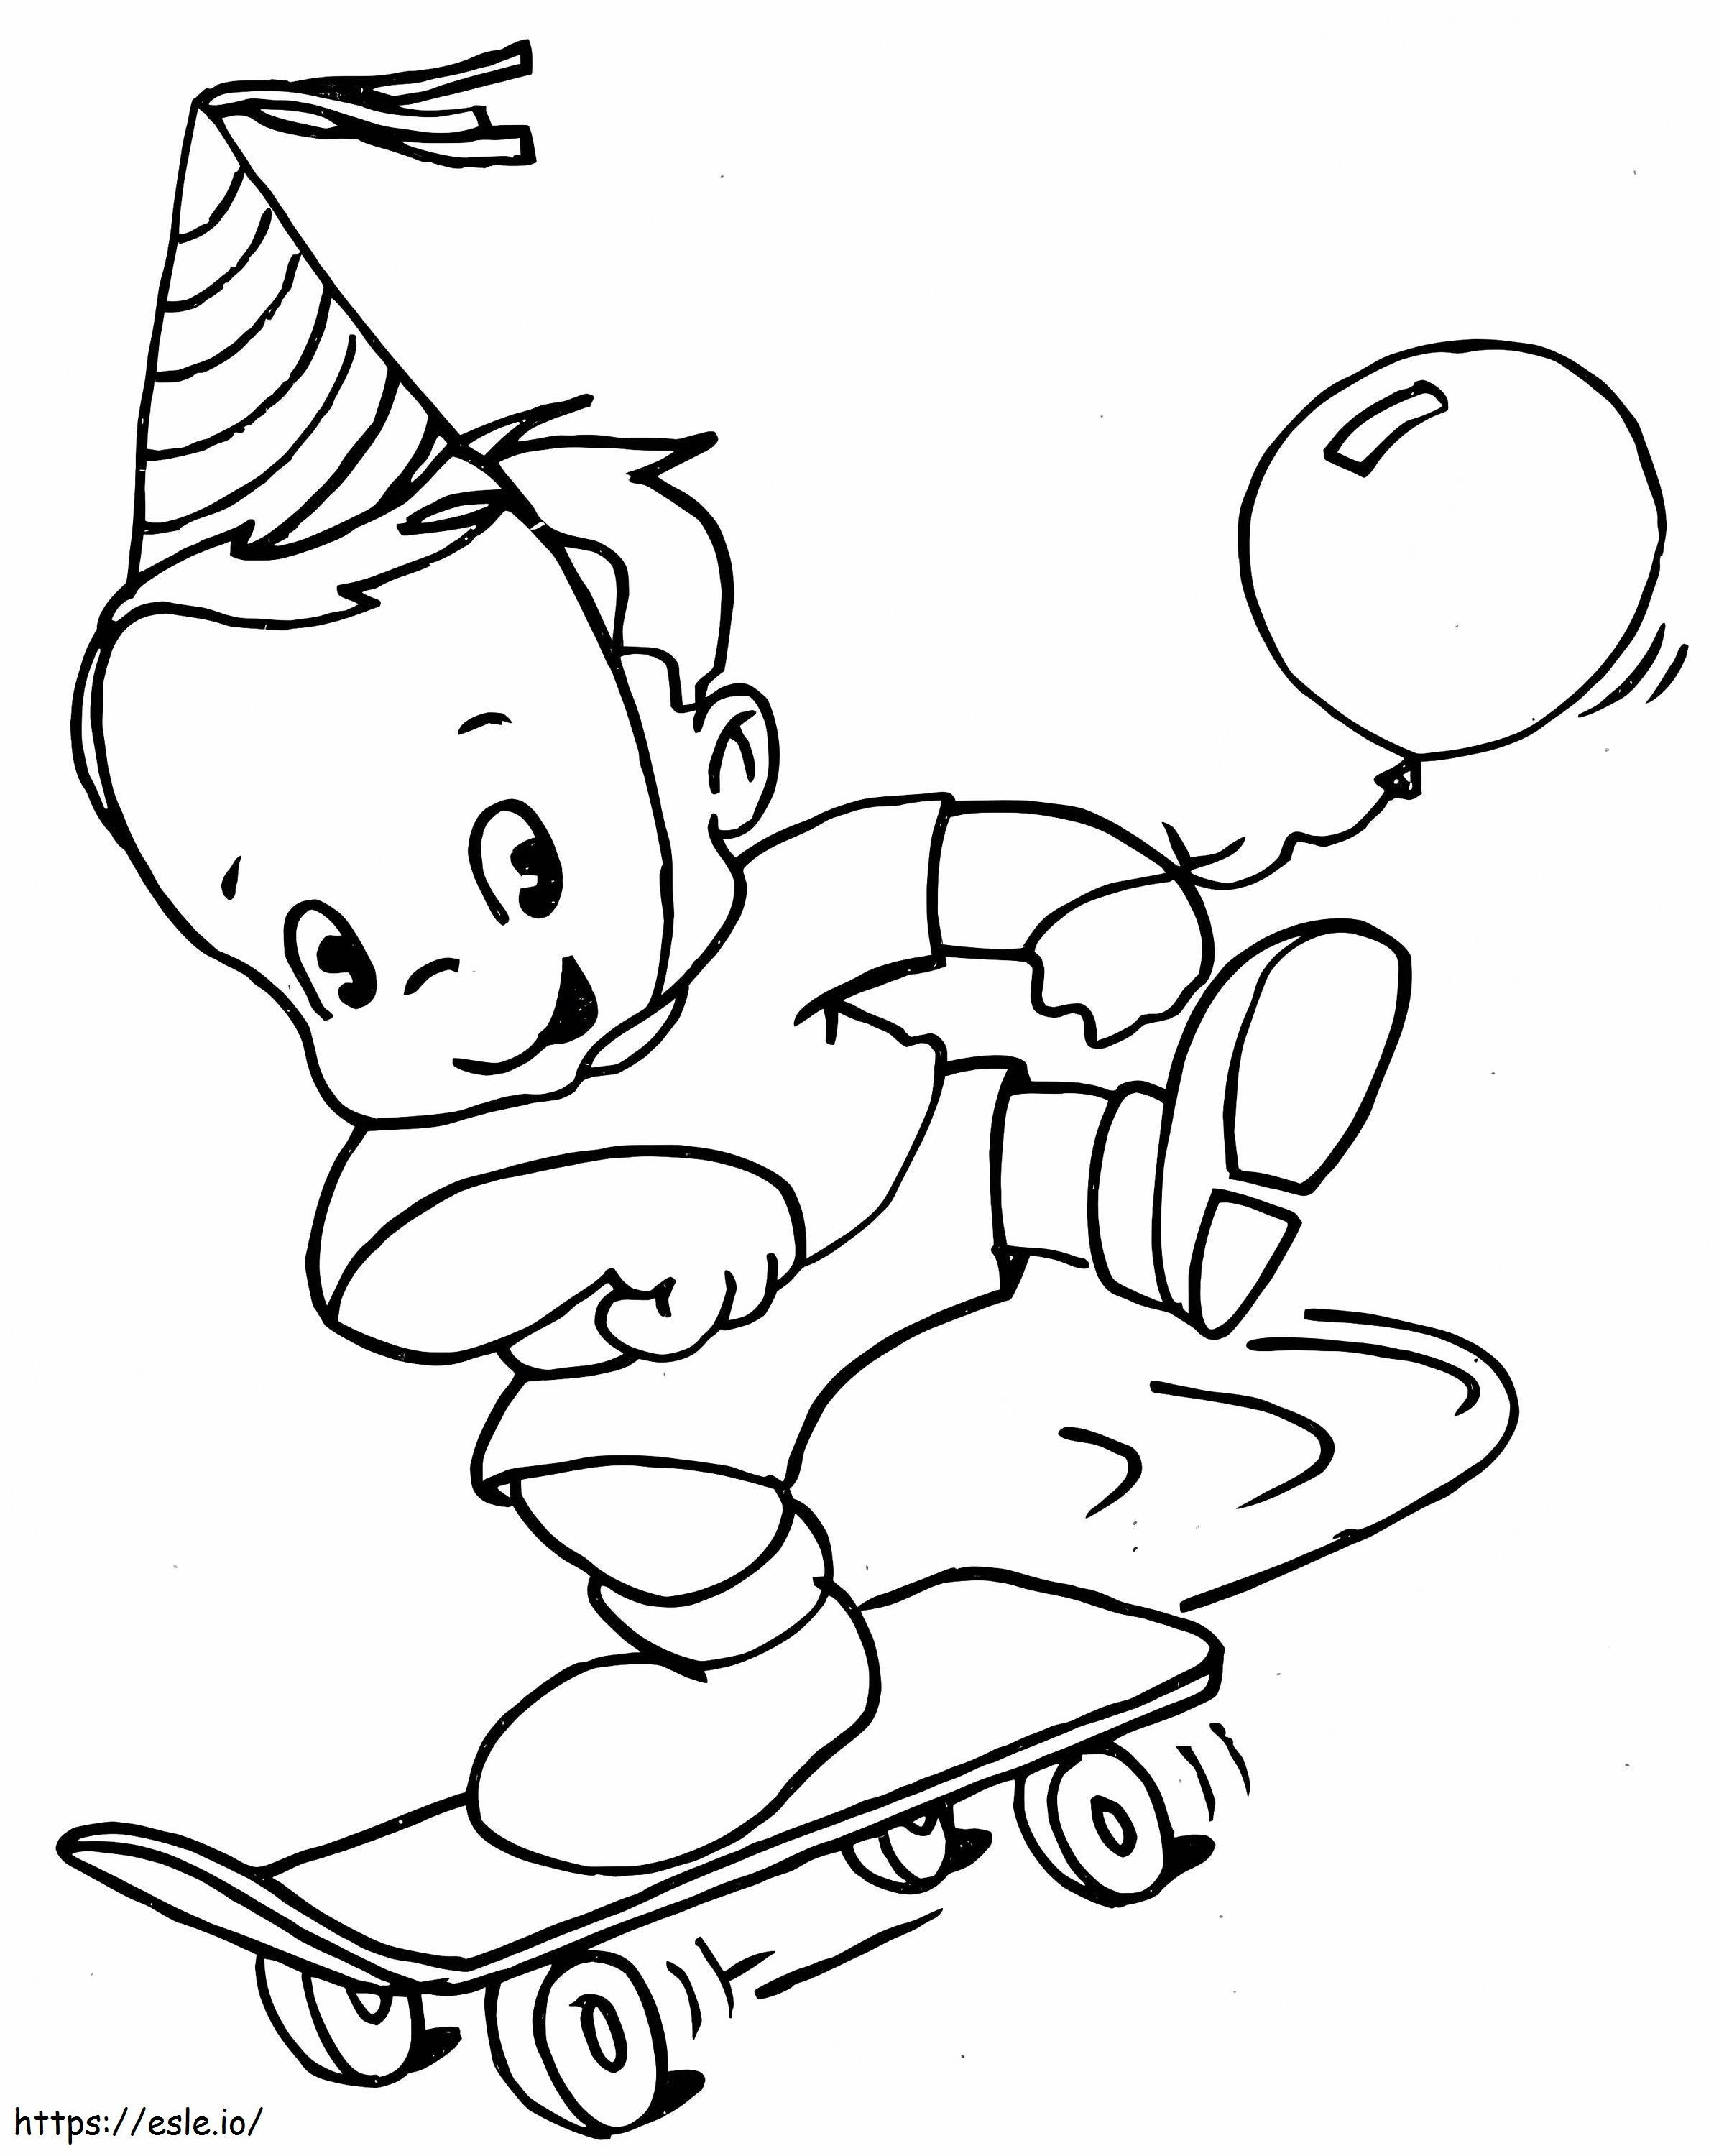 Ein Kind mit Skateboard ausmalbilder